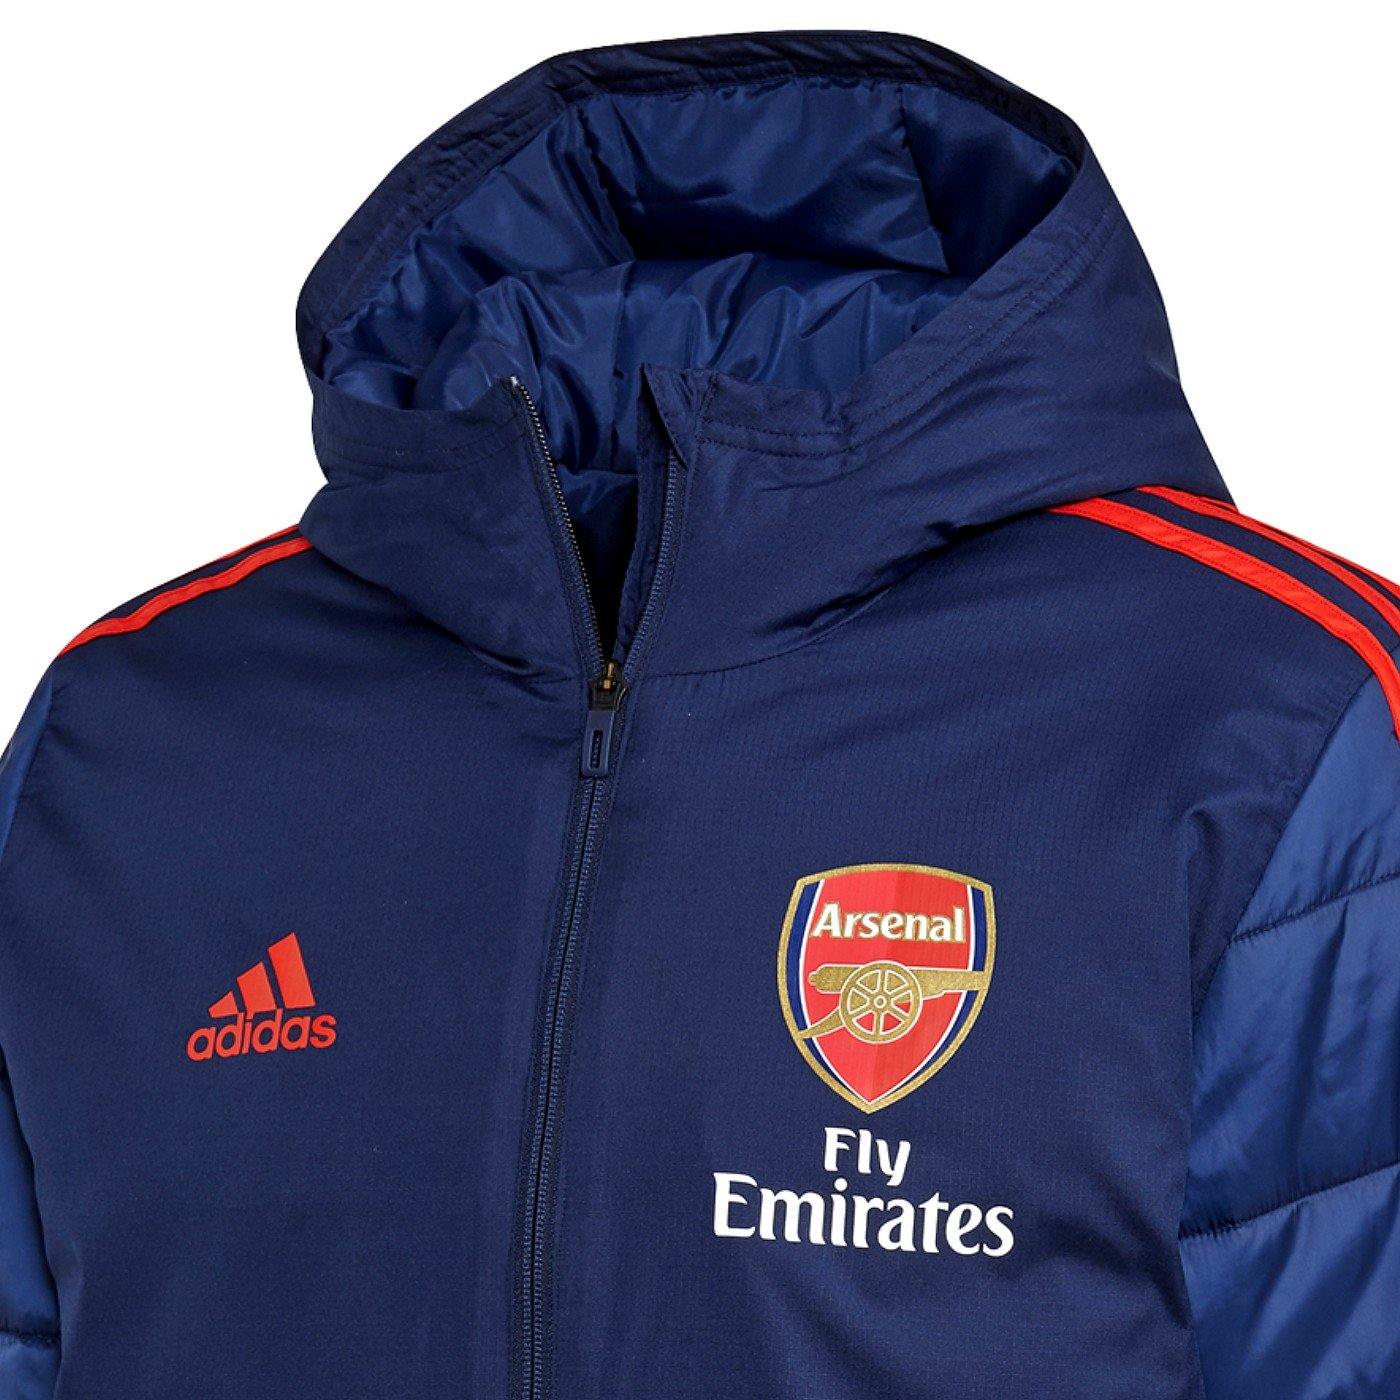 Arsenal International Club Soccer Fan Jackets for sale